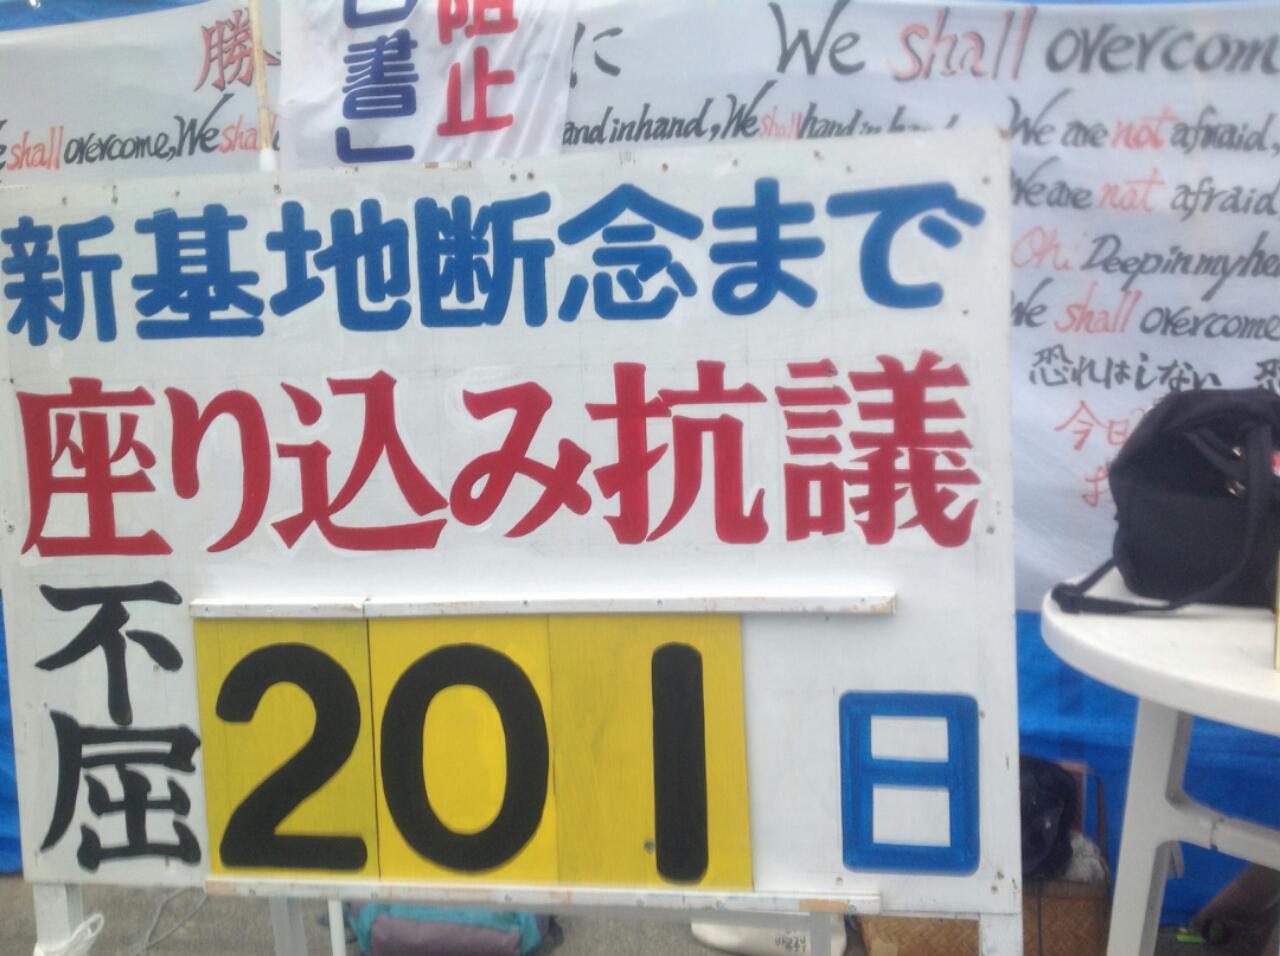 1月23日 キャンプシュワブゲート前抗議行動 その1_c0325437_9513634.jpg